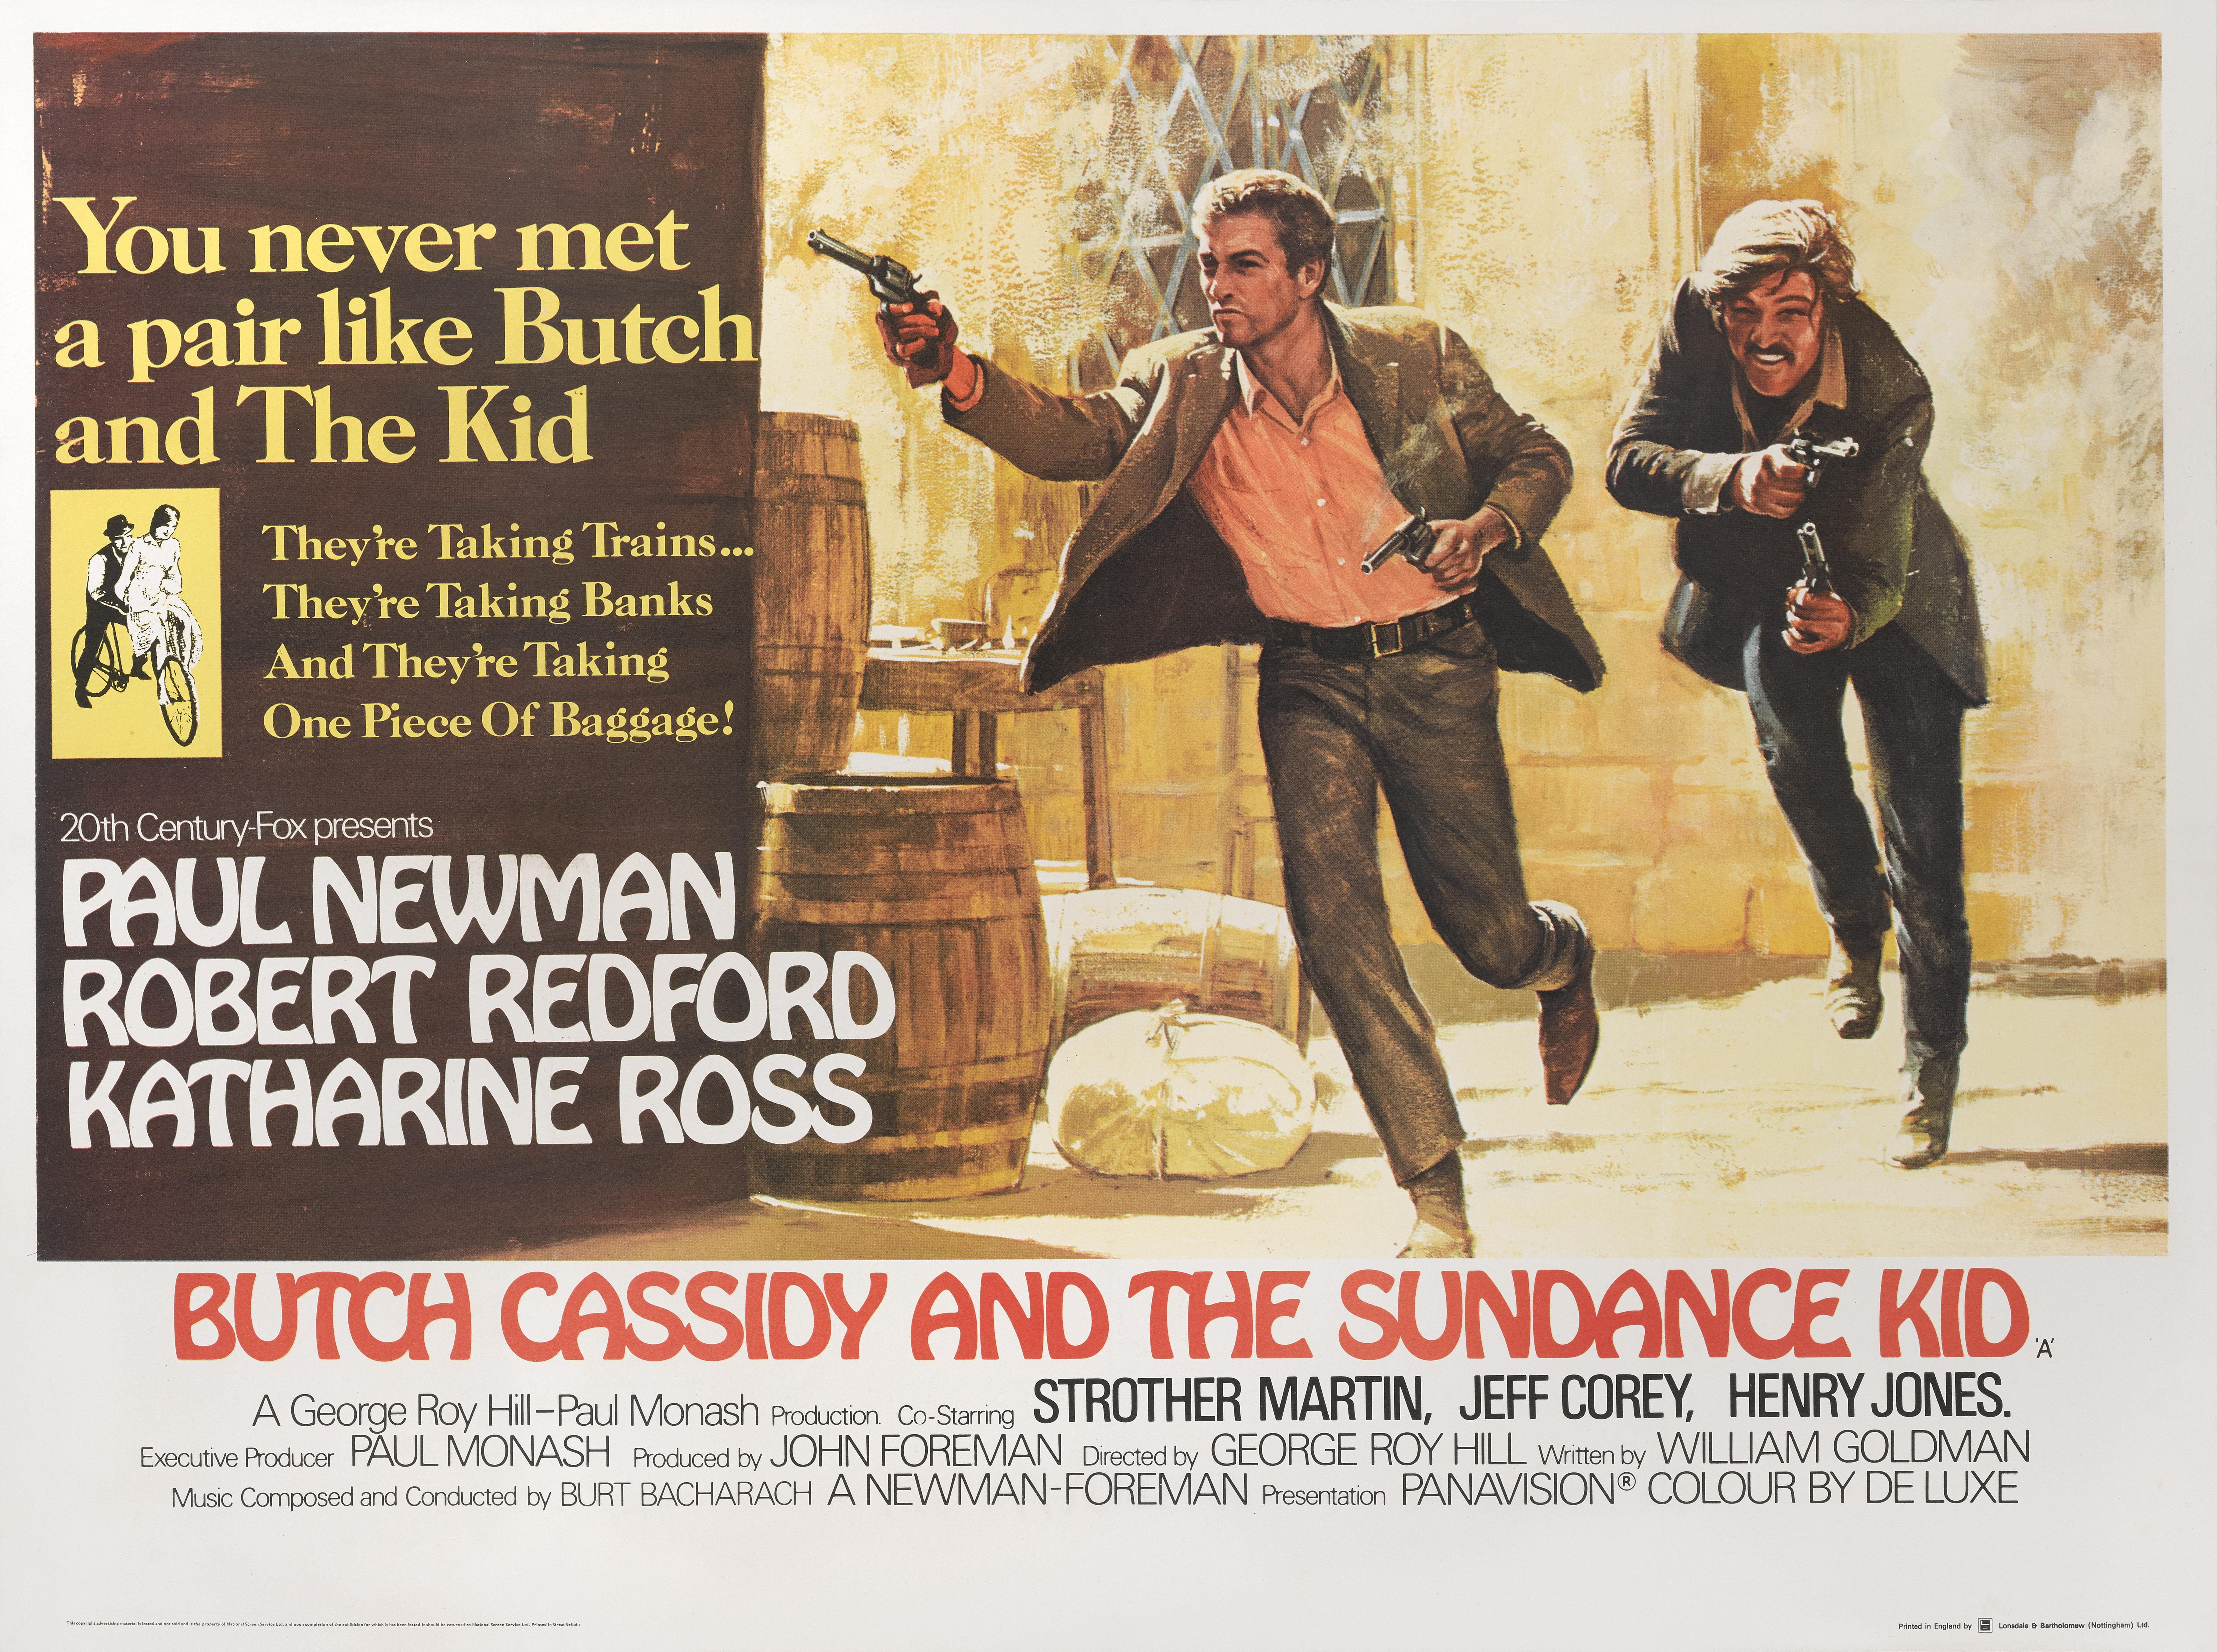 Originales britisches Filmplakat für den Westernklassiker von 1969 mit Paul Newman, Robert Redford und Katherine Ross in den Hauptrollen. Die Regie bei diesem Film führte George Roy Hill.  Diese Größe des Plakats wurde zur Zeit der Veröffentlichung